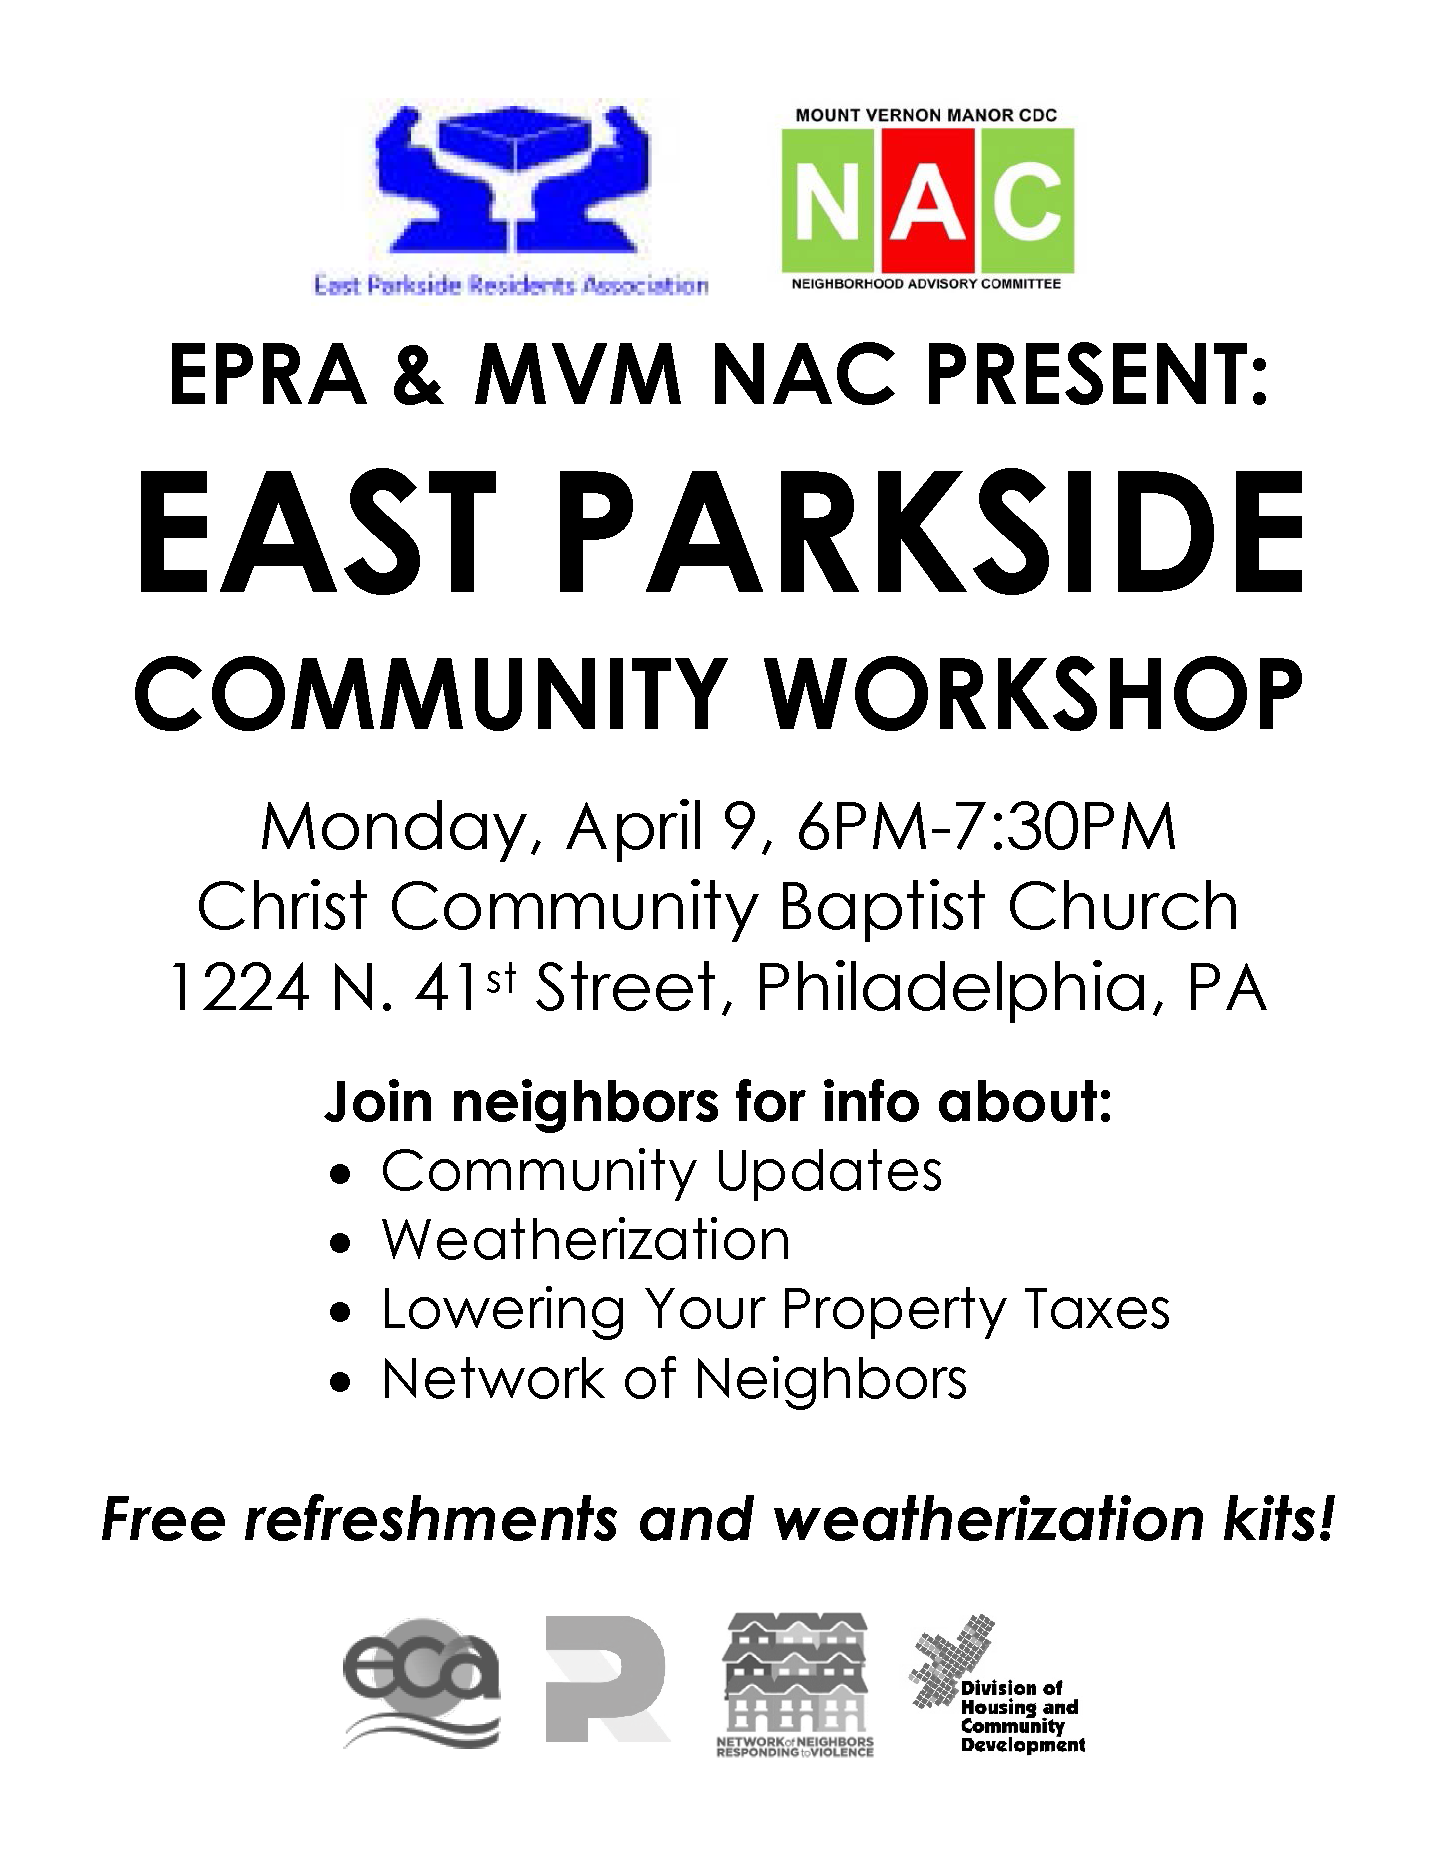 East Parkside Community Workshop April 9